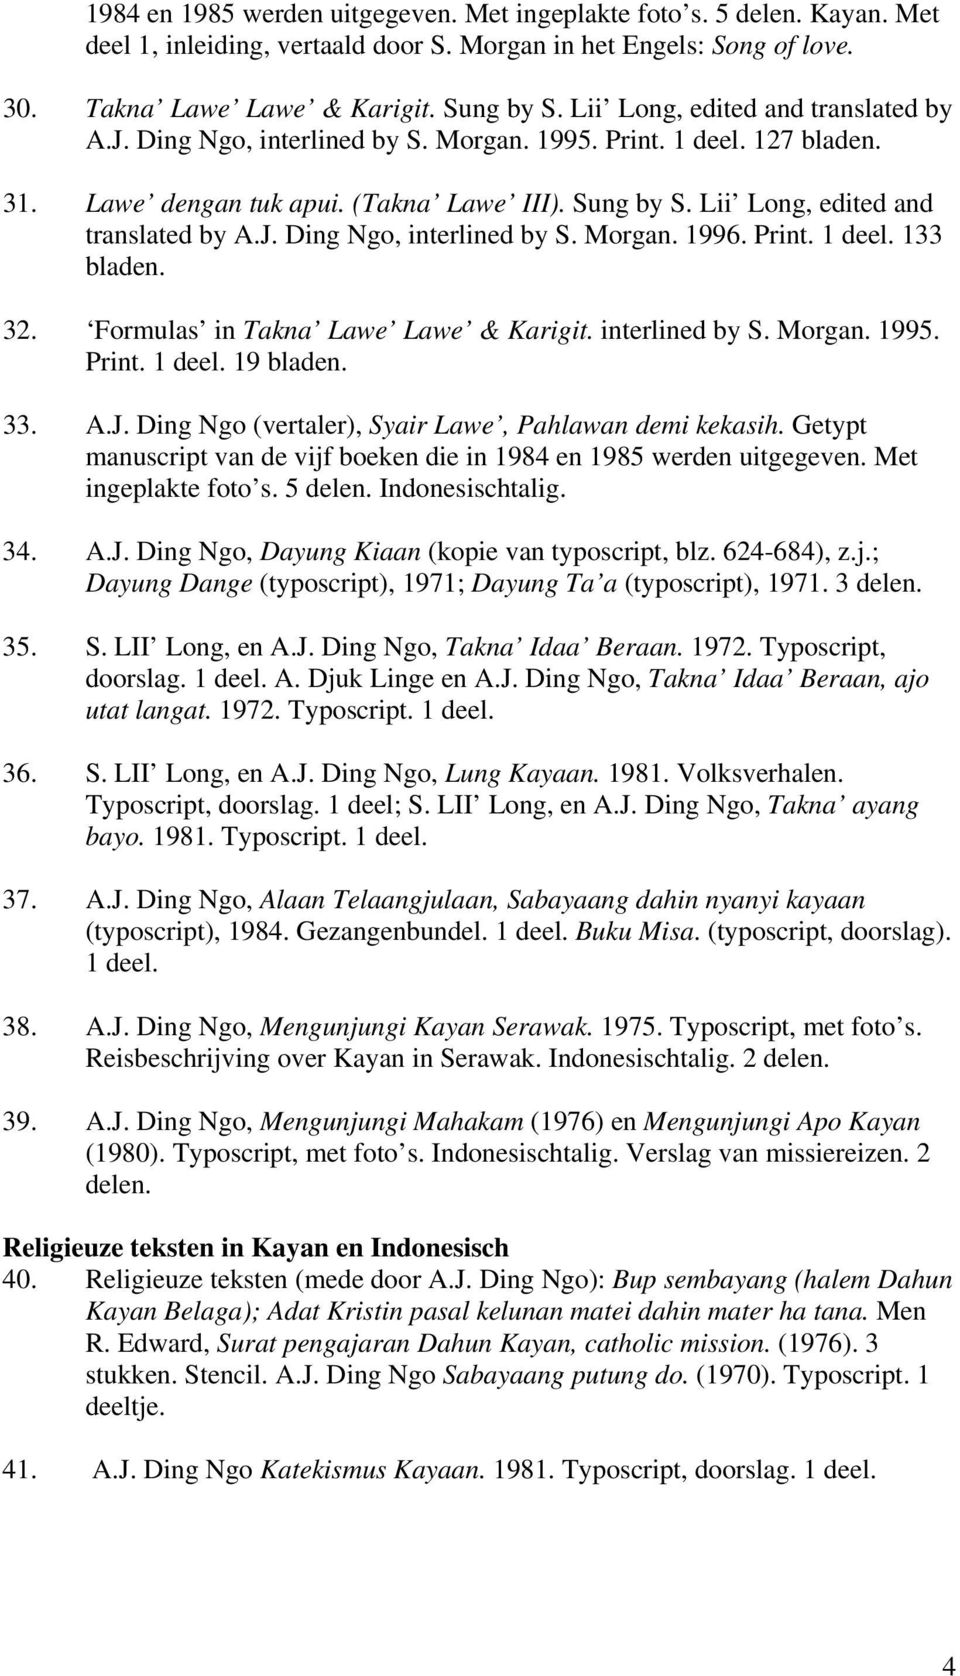 J. Ding Ngo, interlined by S. Morgan. 1996. Print. 1 deel. 133 bladen. 32. Formulas in Takna Lawe Lawe & Karigit. interlined by S. Morgan. 1995. Print. 1 deel. 19 bladen. 33. A.J. Ding Ngo (vertaler), Syair Lawe, Pahlawan demi kekasih.